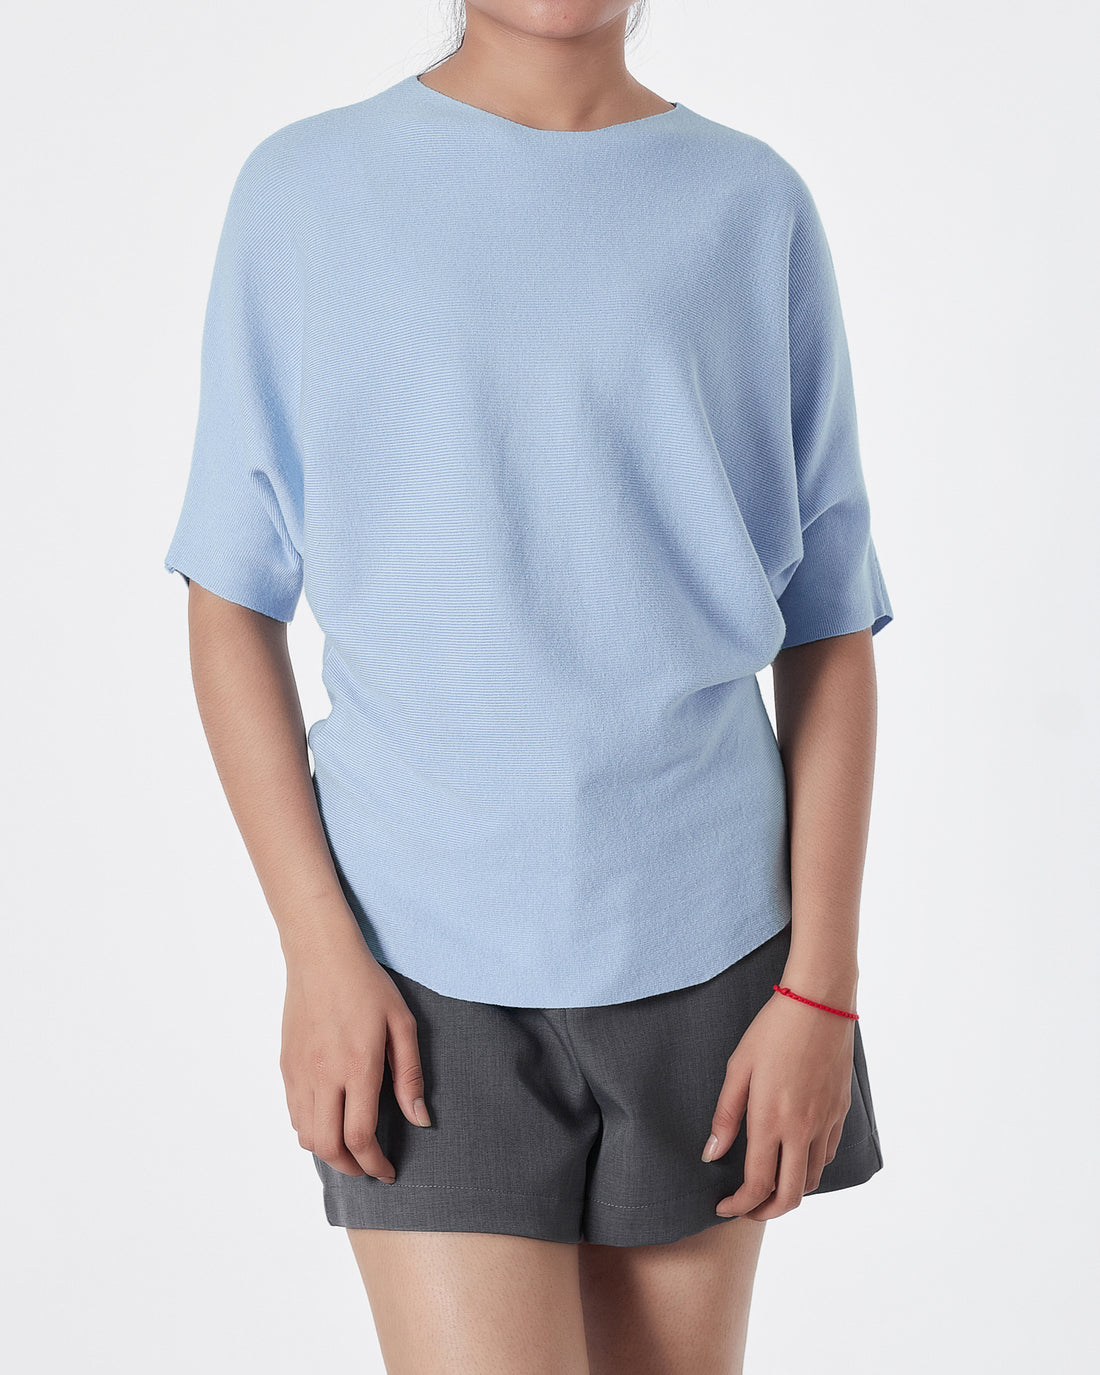 Plain Color Soft Knit Lady Light Blue T-Shirt 14.90